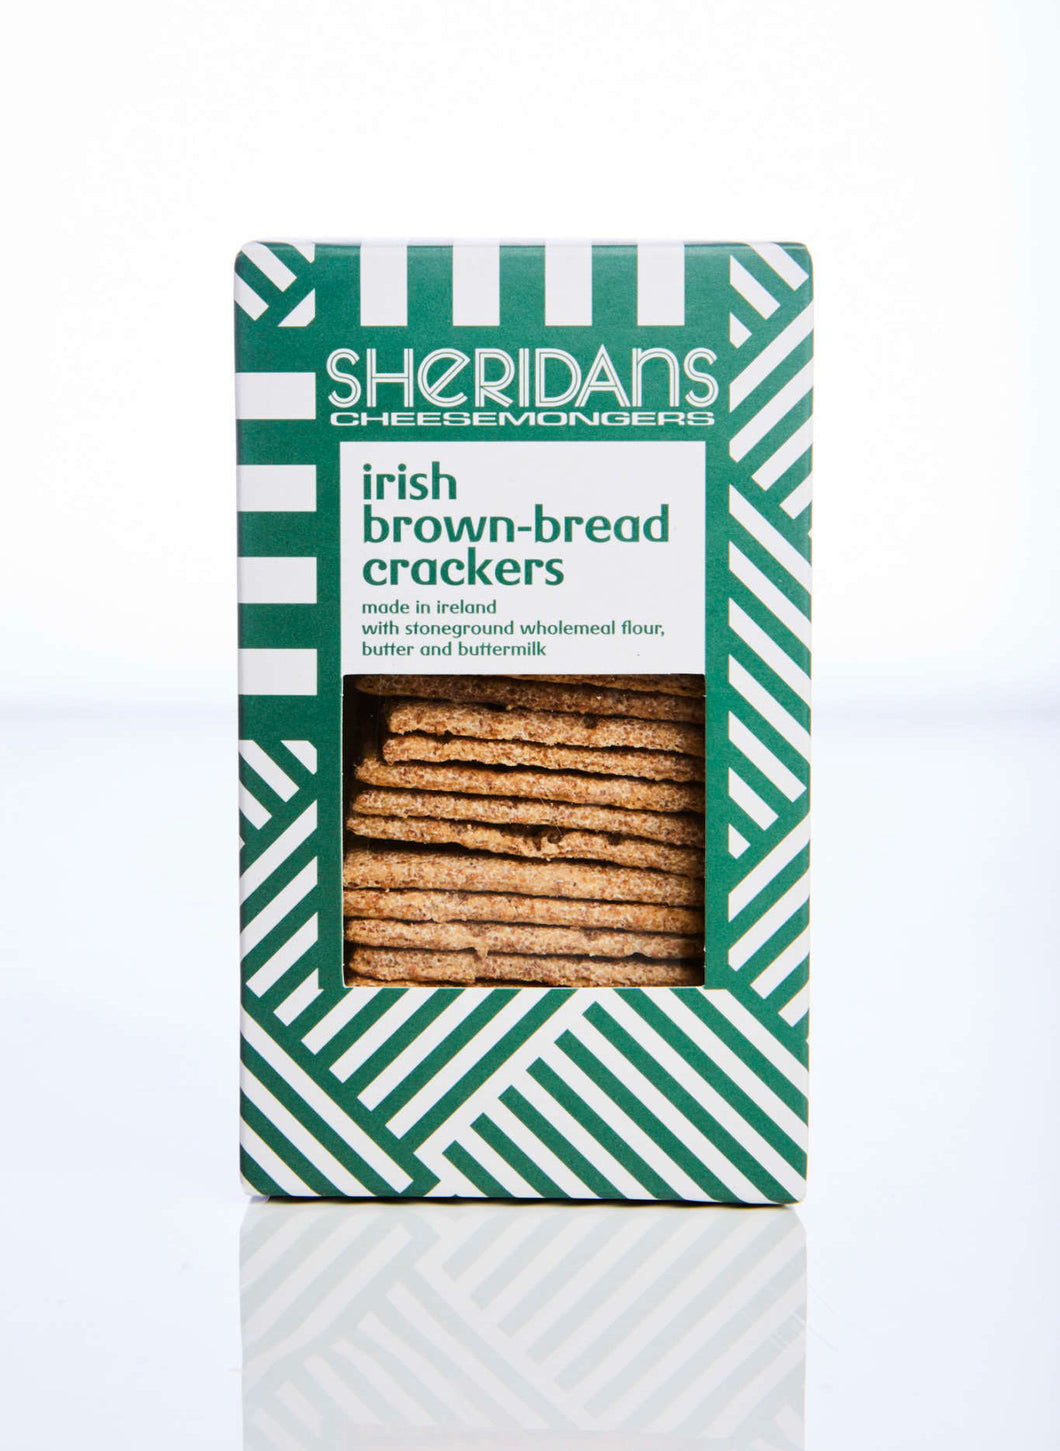 Sheridan’s Cheesemongers Irish Crackers